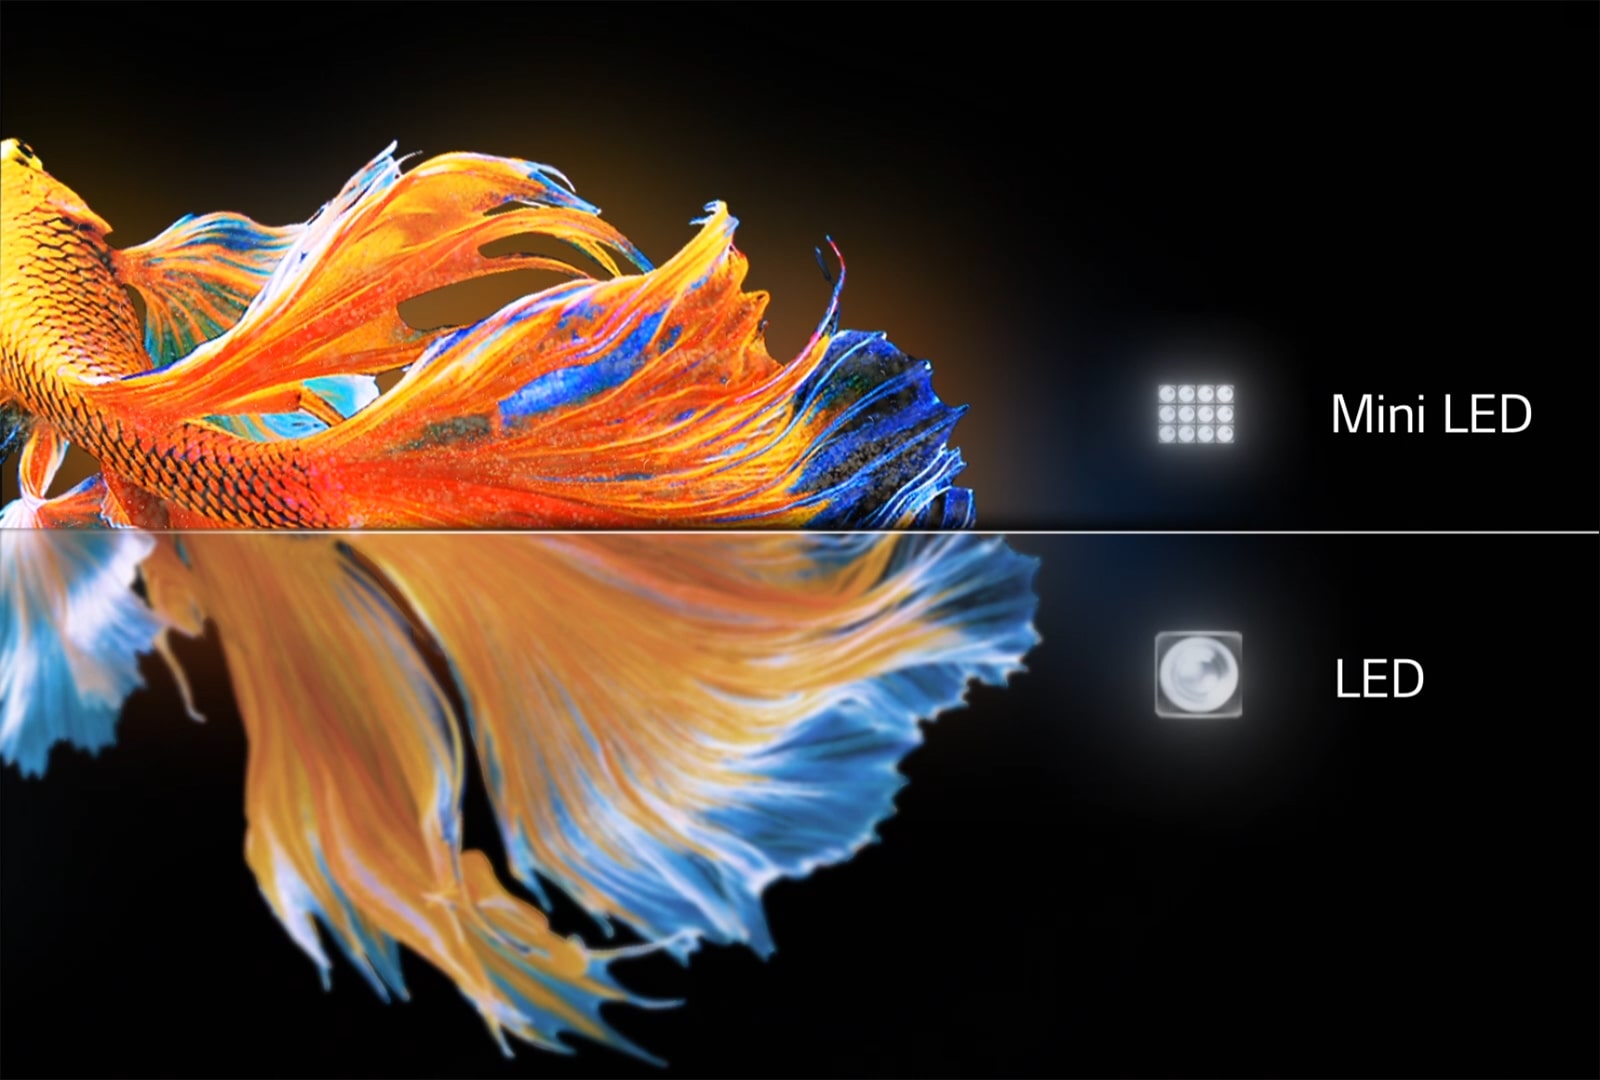 Image d'un poisson long. La moitié inférieure sur LED LG conventionnel est floue et terne. La moitié supérieure sur MiniLED est plus nette et plus colorée (lire la vidéo).